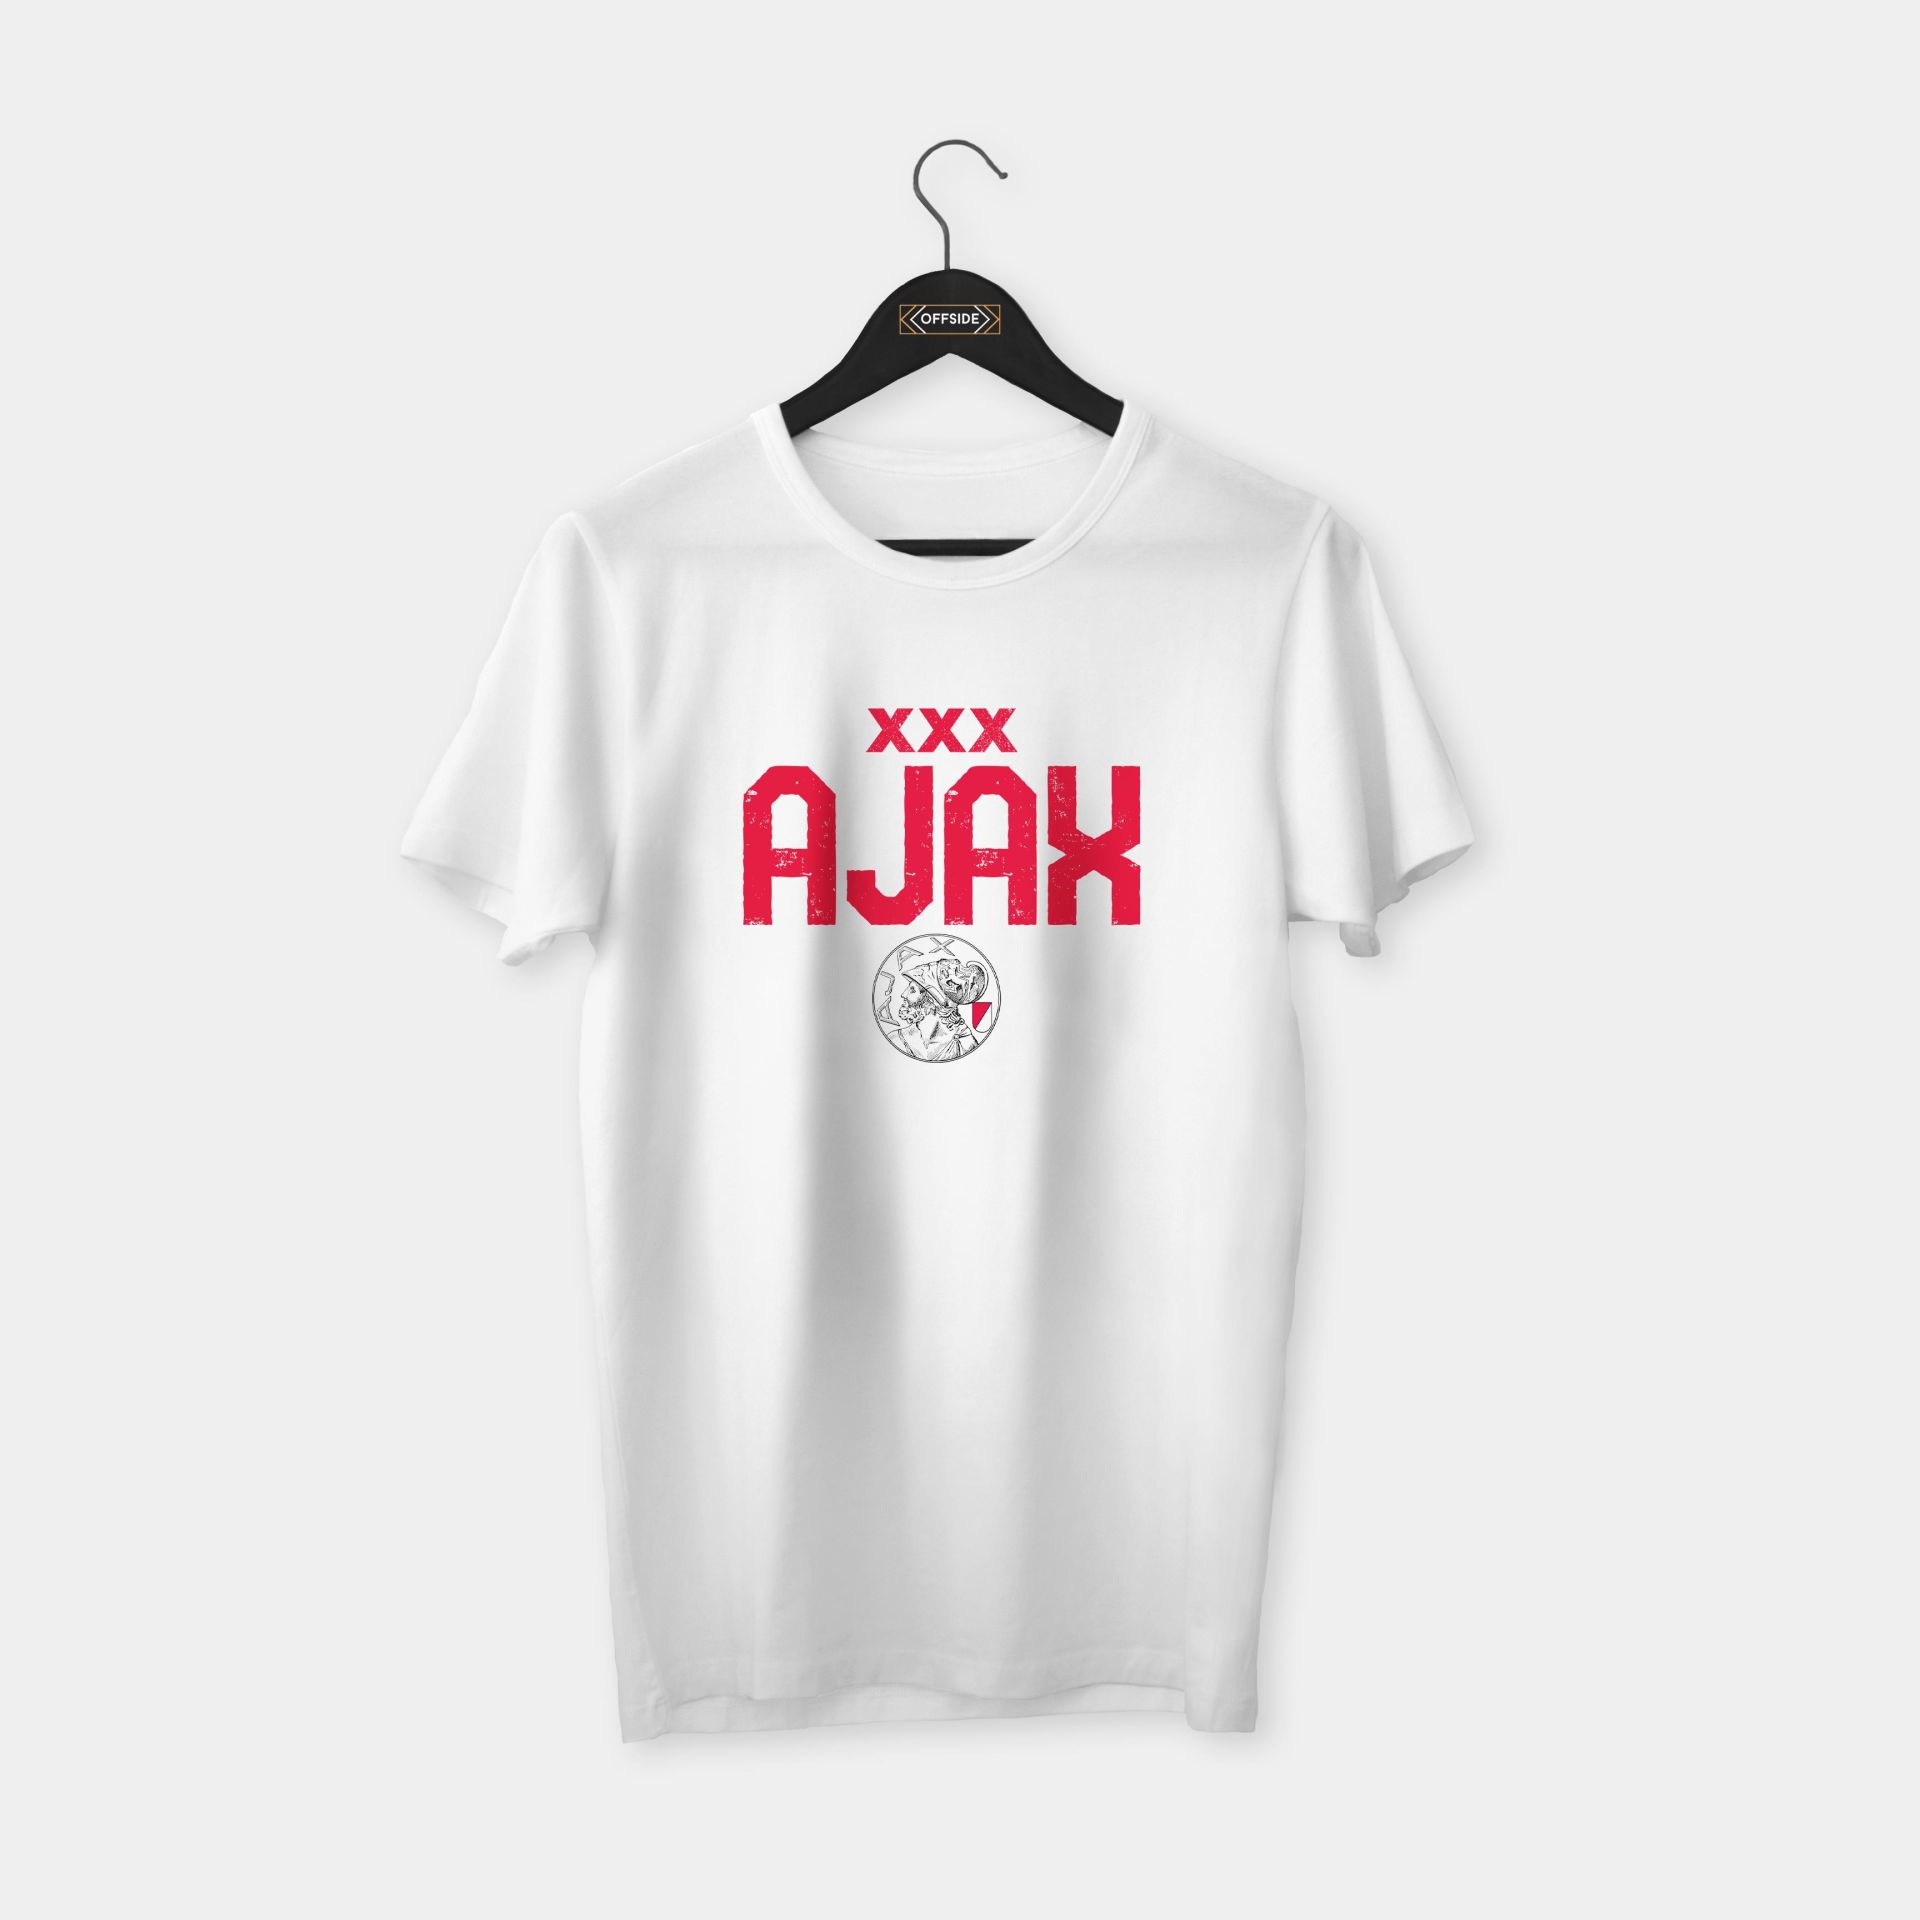 Ajax 'XXX' II T-shirt